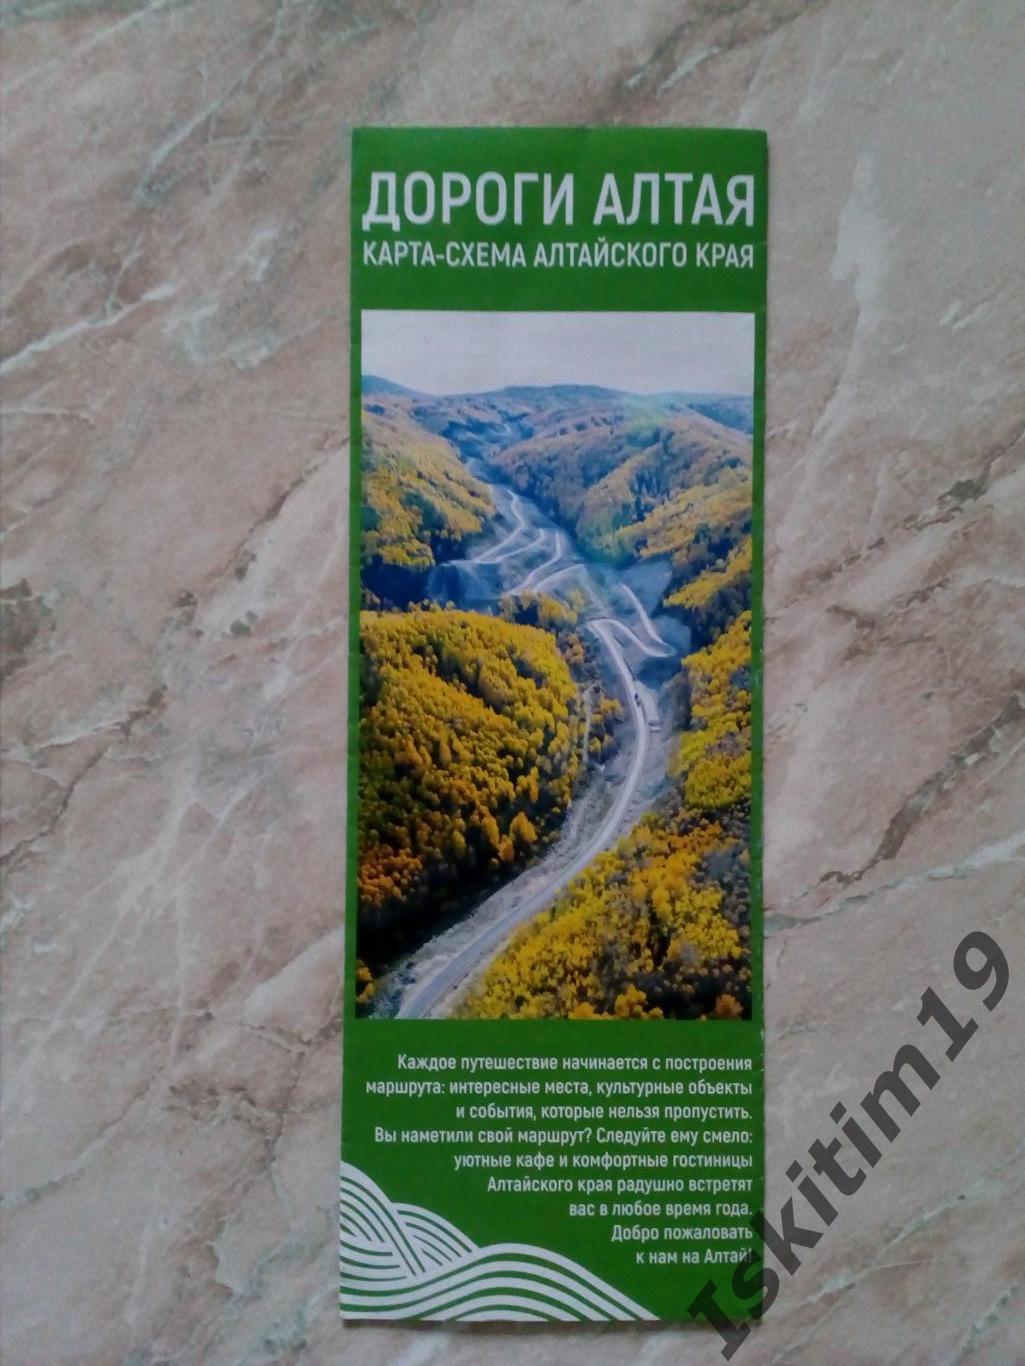 Карта-схема Алтайского края Дороги Алтая, состояние на фото